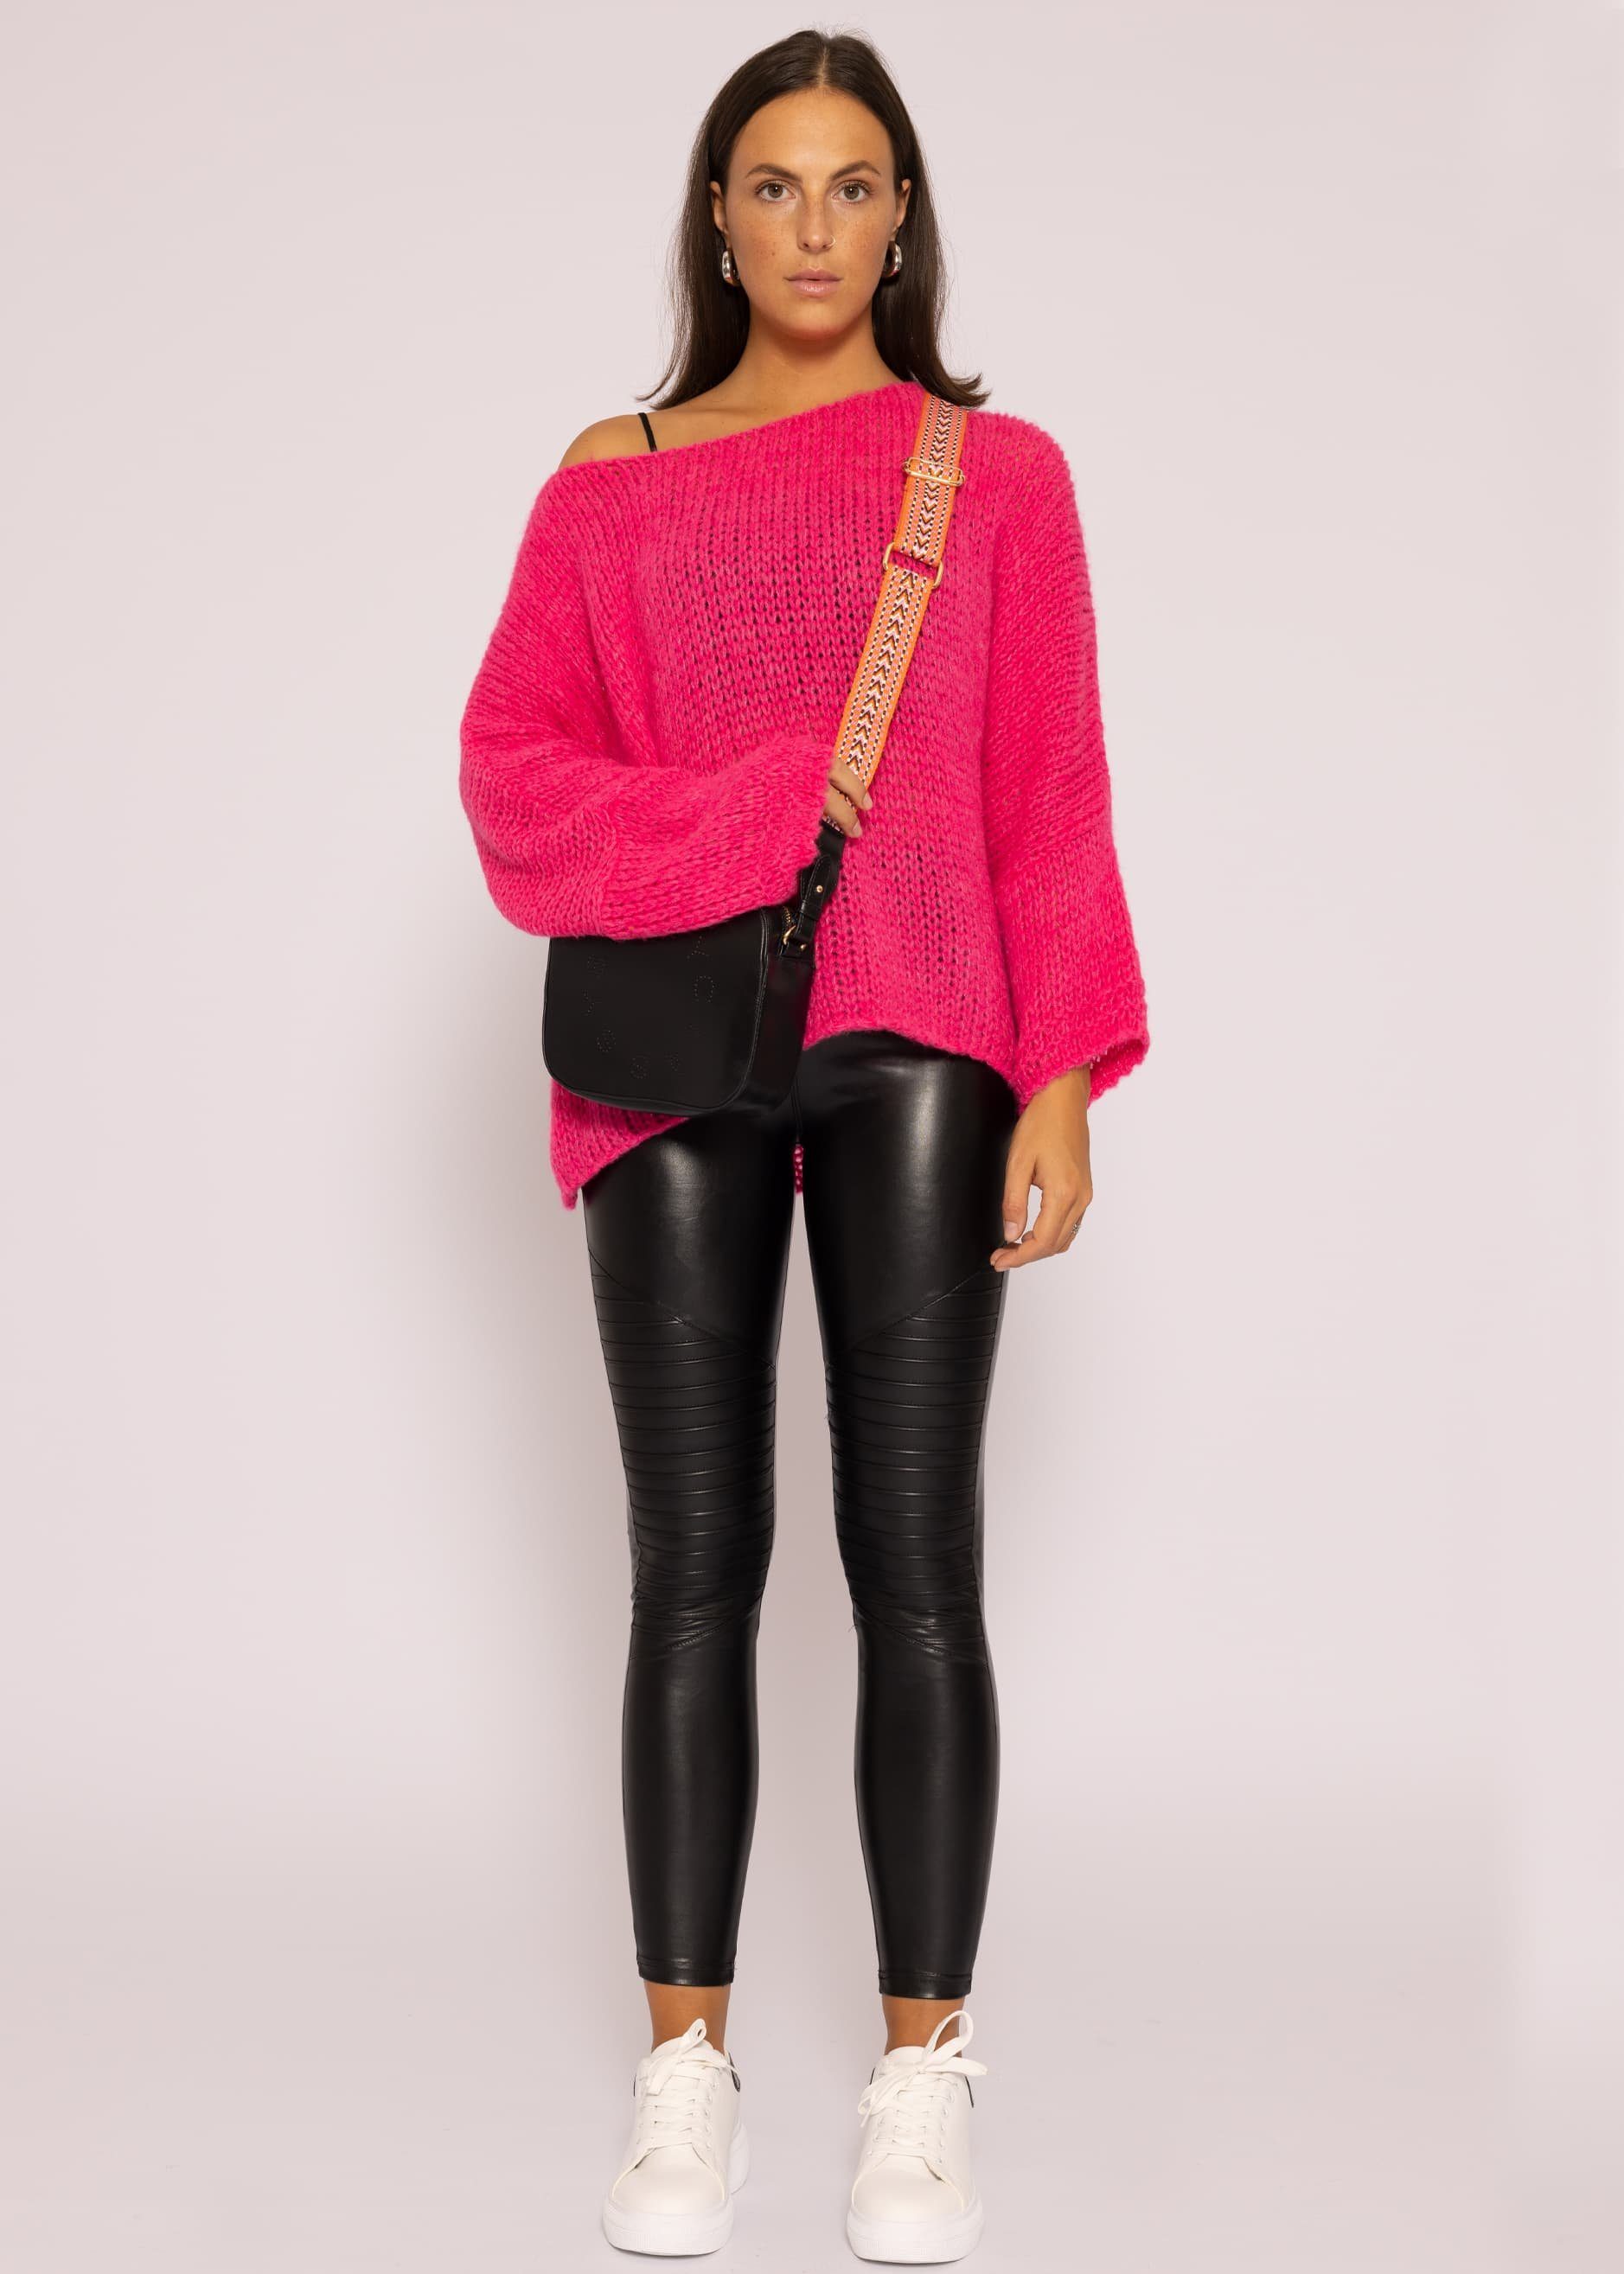 Strickpullover aus Italy lang Damen mit weichem Lässiger Strickpullover SASSYCLASSY in Made Grobstrick Pink Oversize Rundhals-Ausschnitt, Pullover